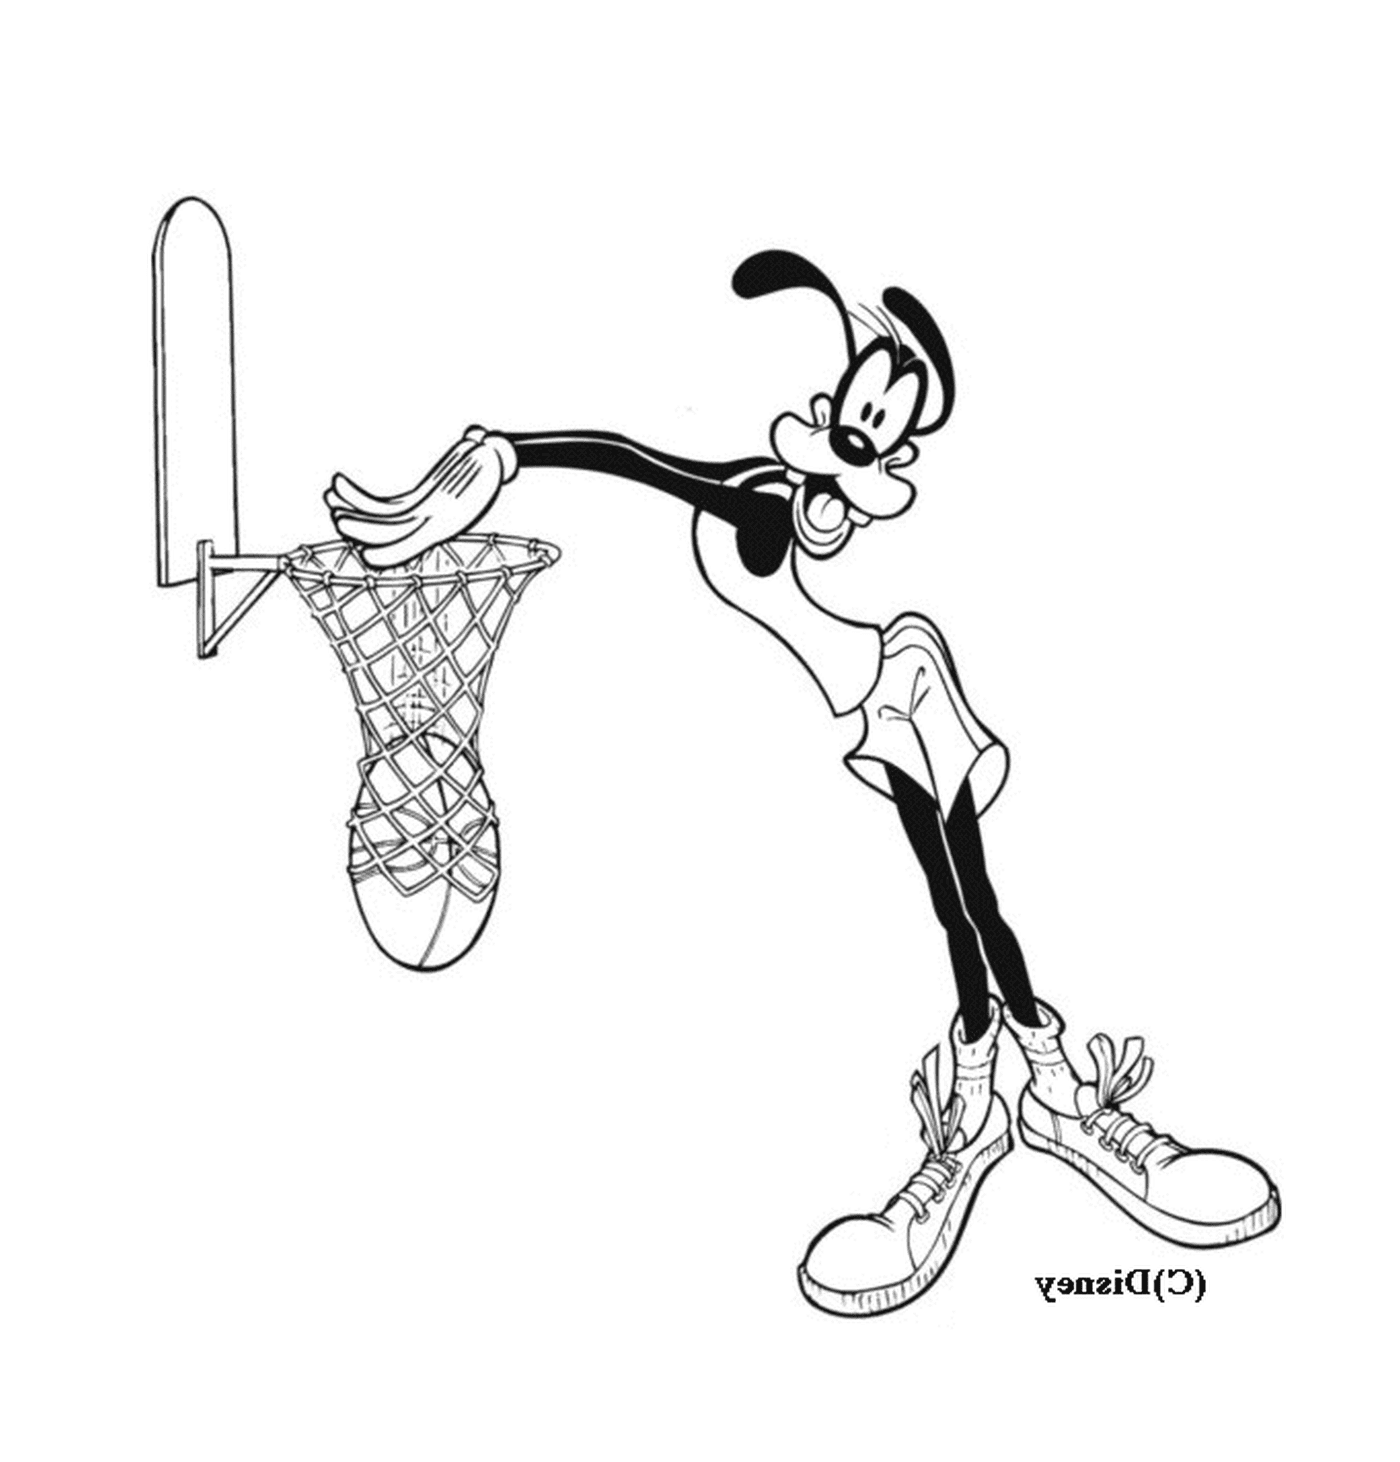  Динго играет в баскетбол в мультфильме 